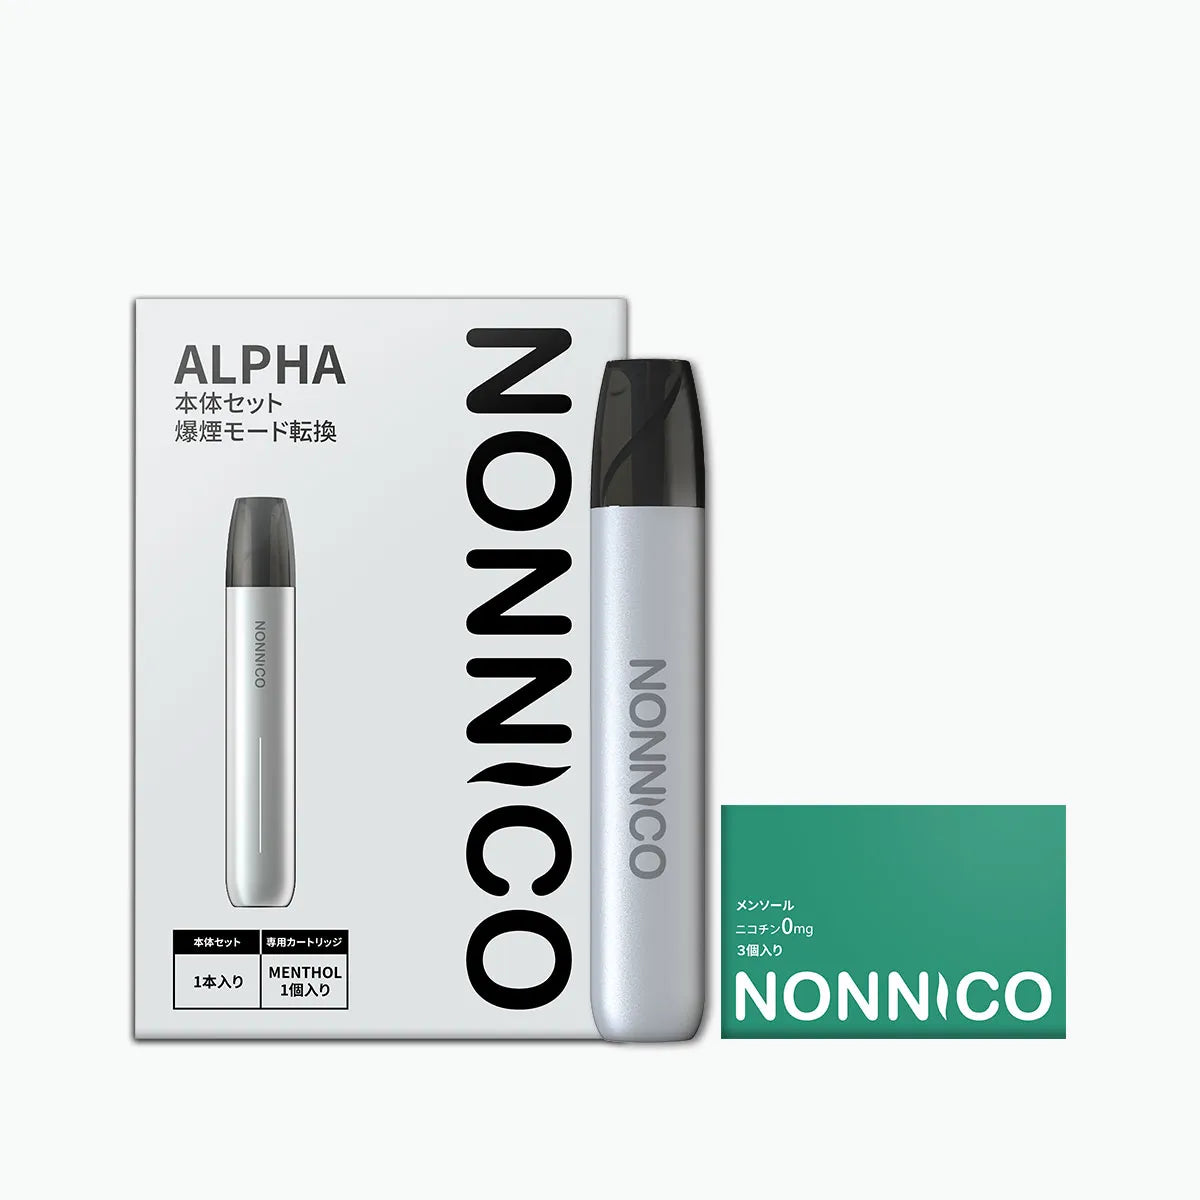 NONNICO Alpha POD型電子タバコ vape キットセット（シルバー / メンソール）